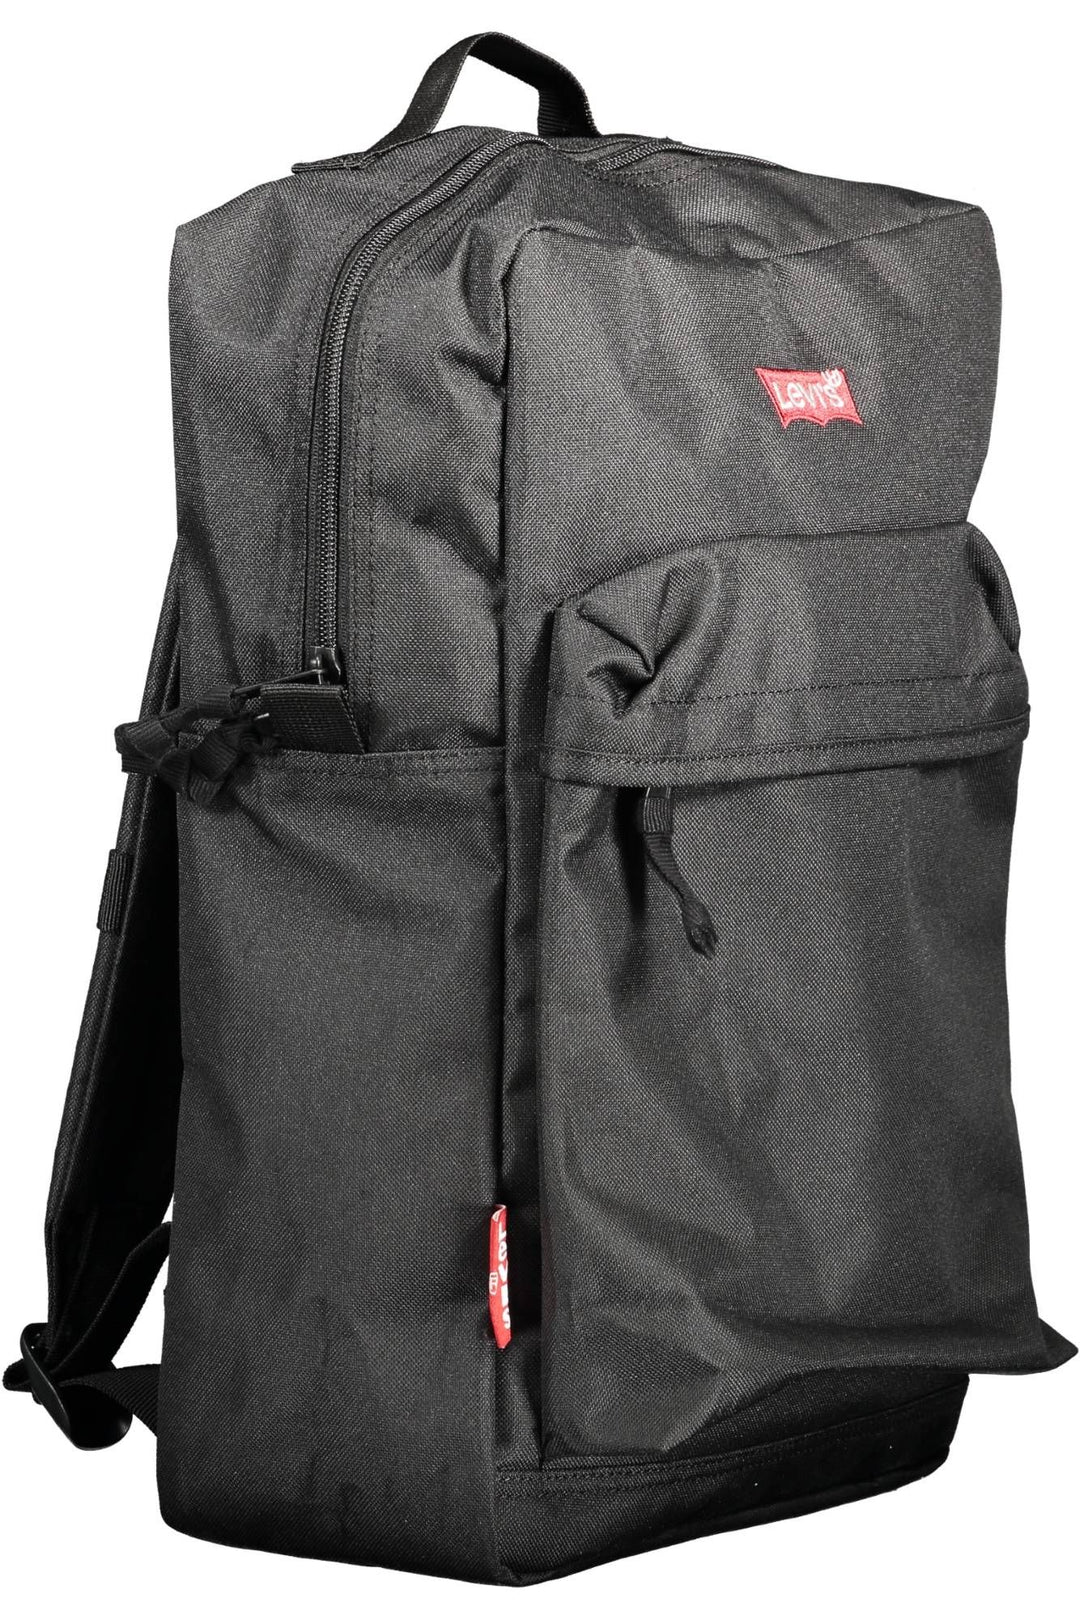 Levi's Eco-Friendly Sleek Black Backpack